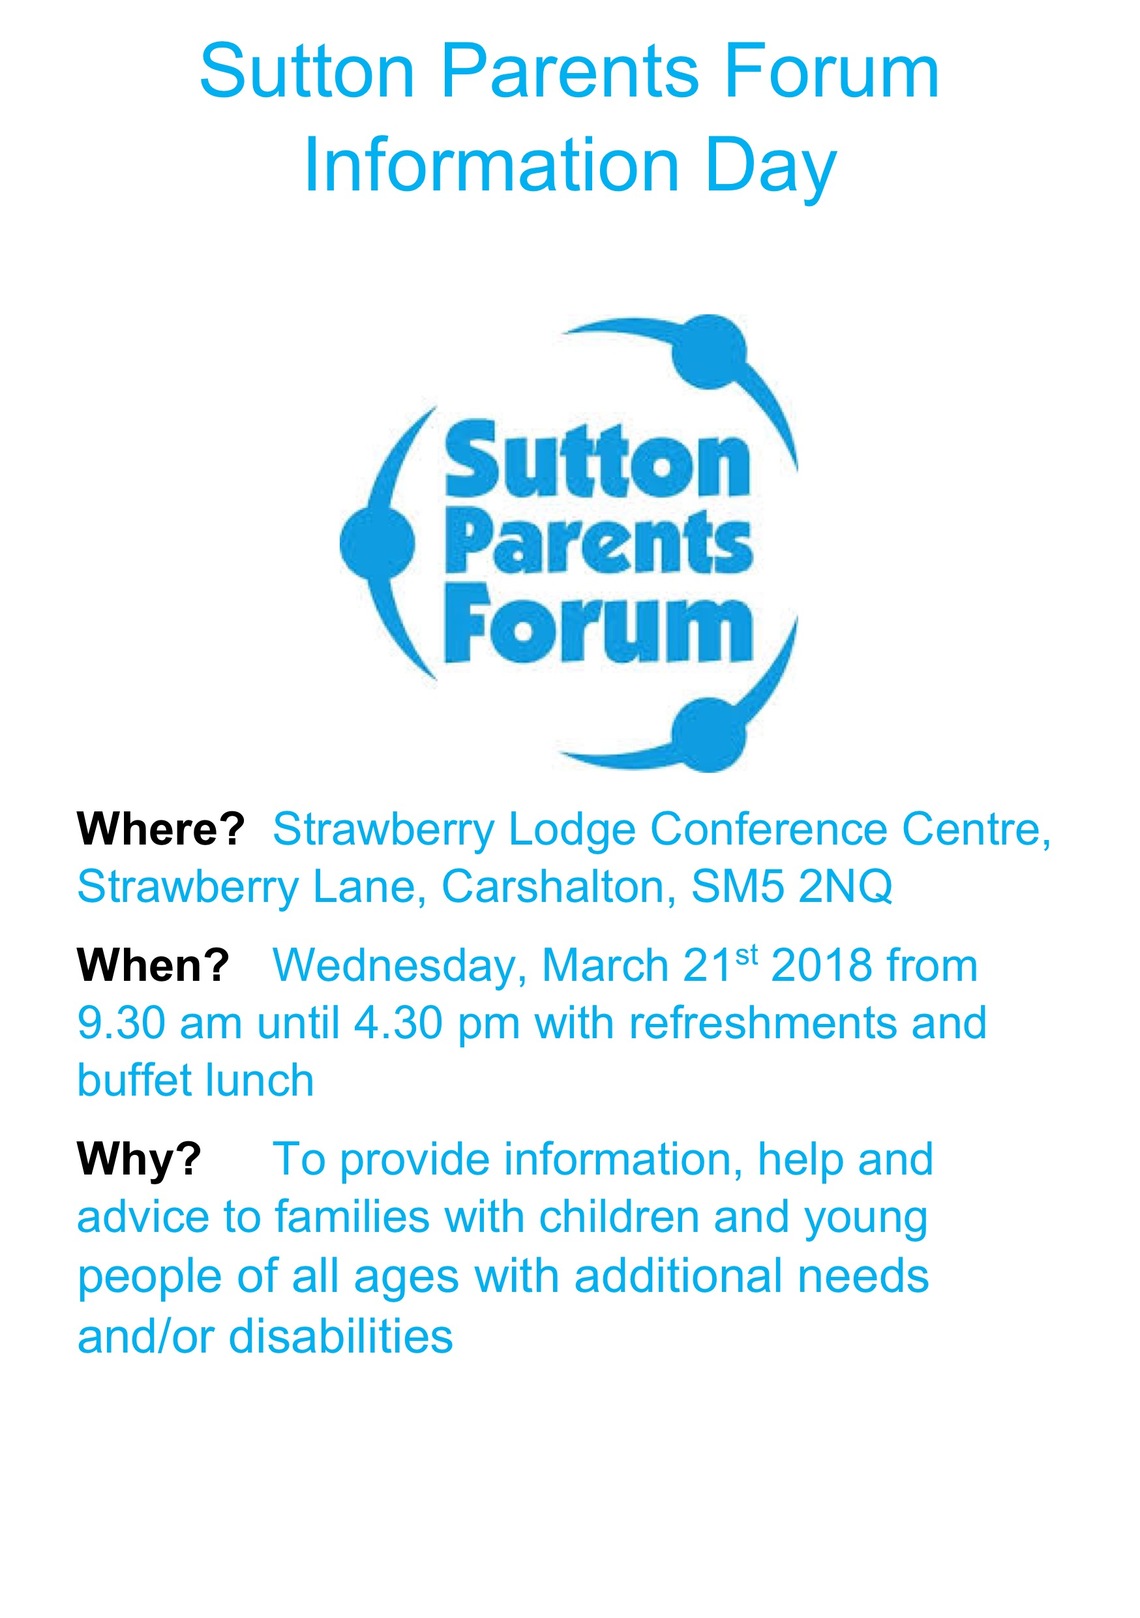 
Sutton Parents Forum Information Day Leaflet